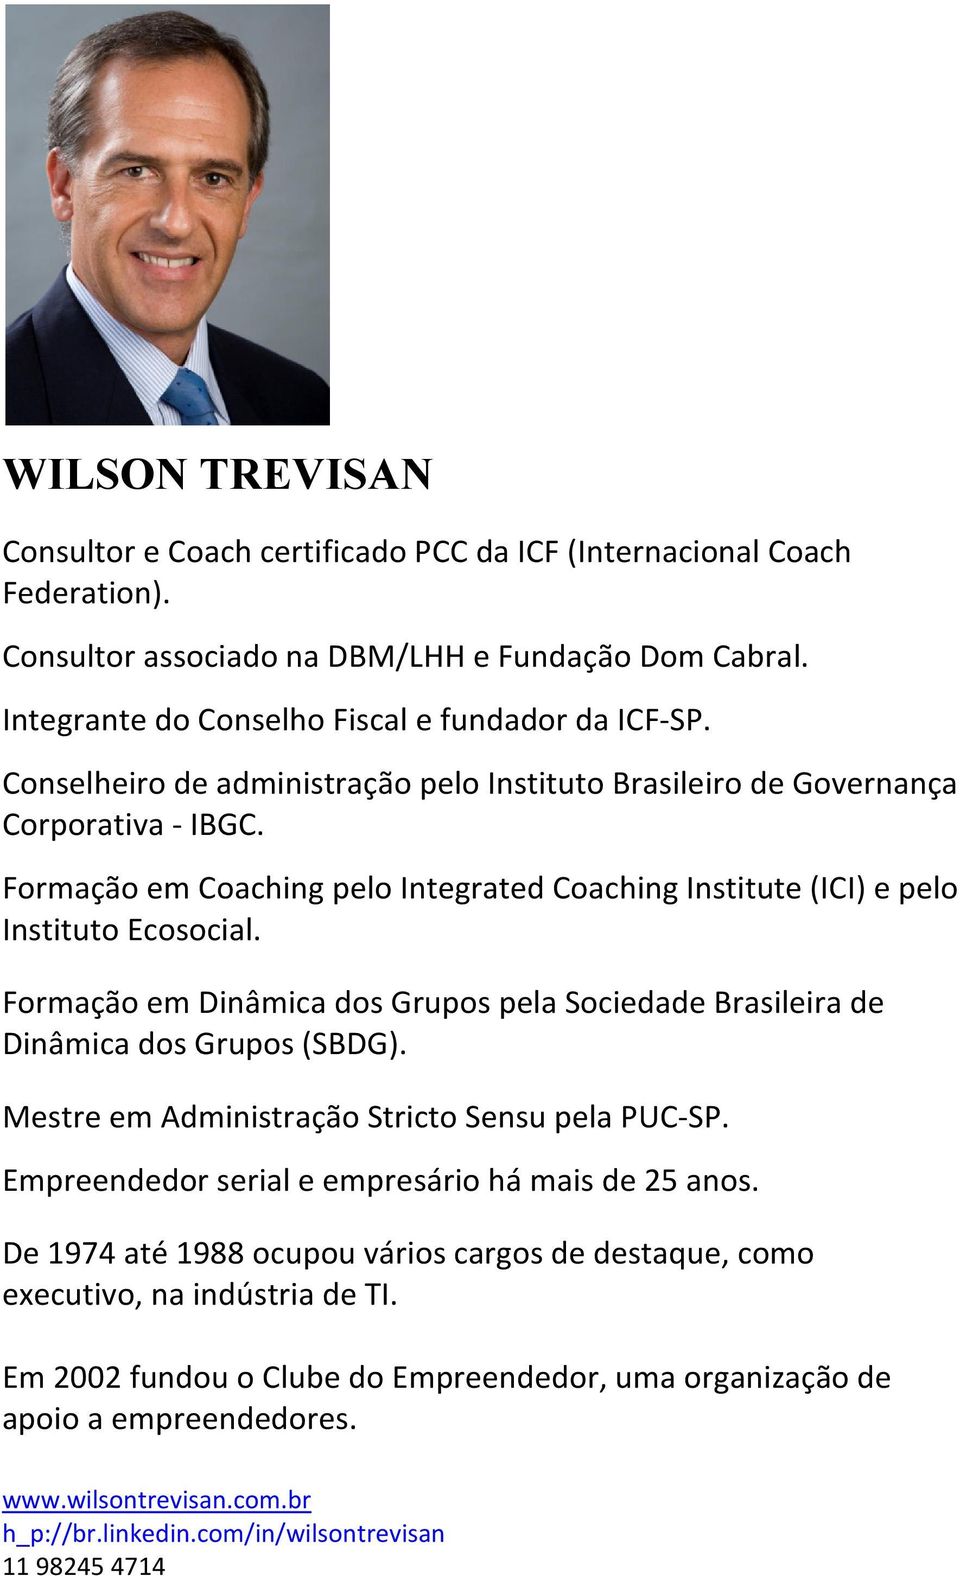 Formação em Dinâmica dos Grupos pela Sociedade Brasileira de Dinâmica dos Grupos (SBDG). Mestre em Administração Stricto Sensu pela PUC-SP. Empreendedor serial e empresário há mais de 25 anos.